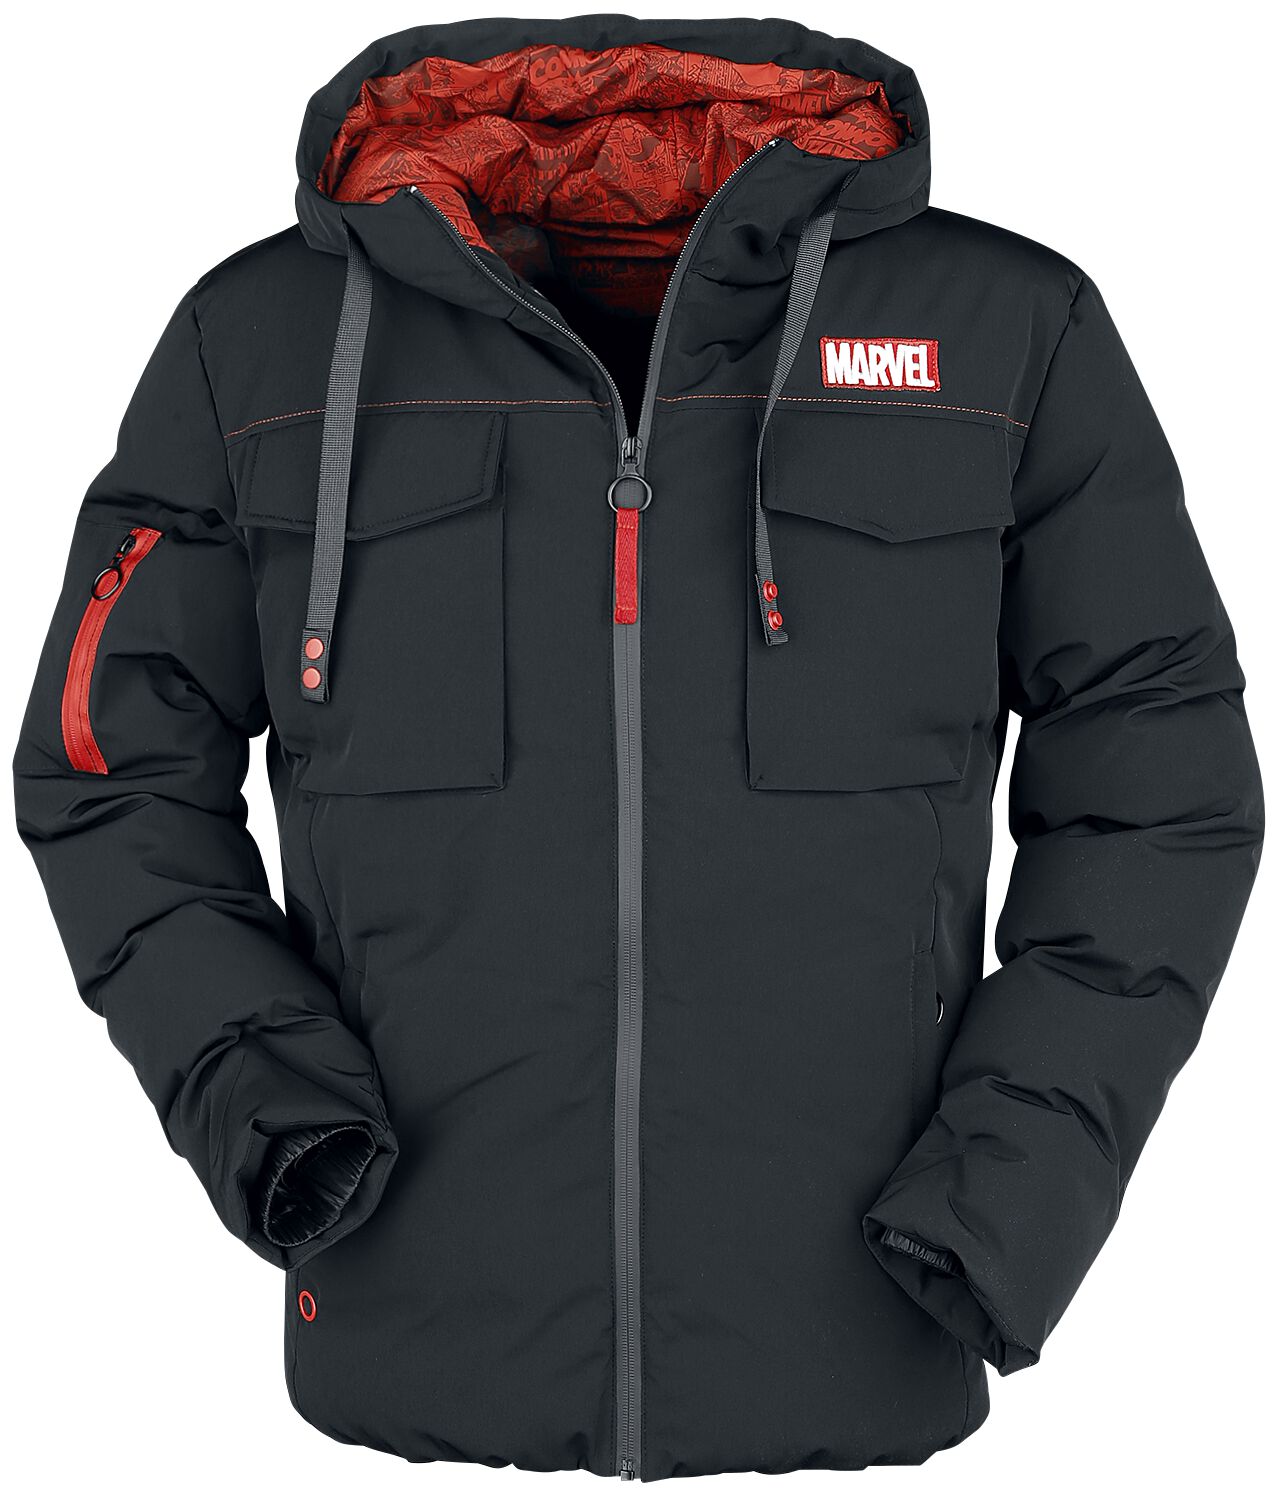 Marvel - Marvel Winterjacke - Marvel Logo - S bis XL - für Männer - Größe M - schwarz  - EMP exklusives Merchandise!